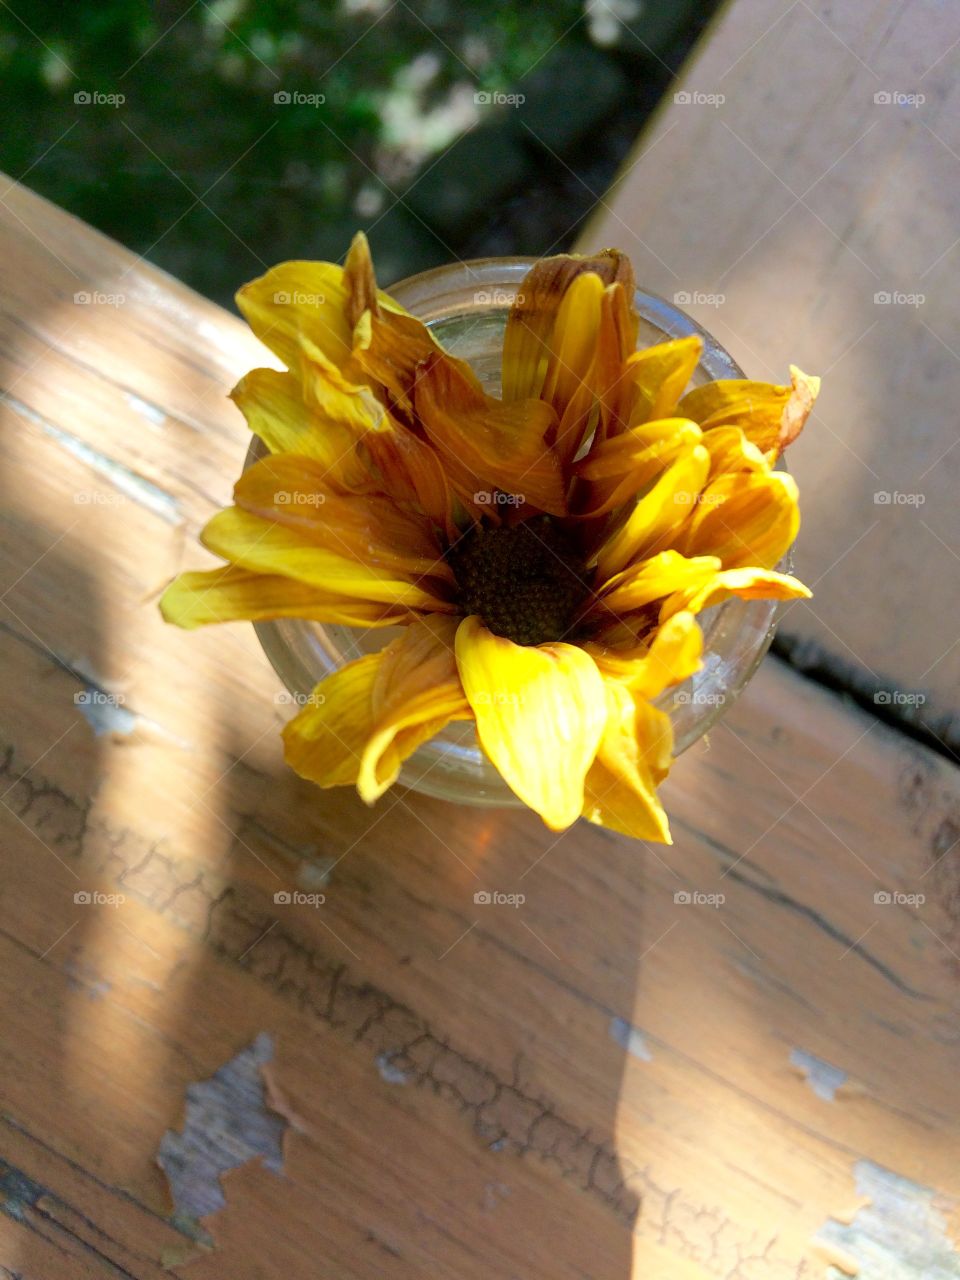 Sunshine in a vase 